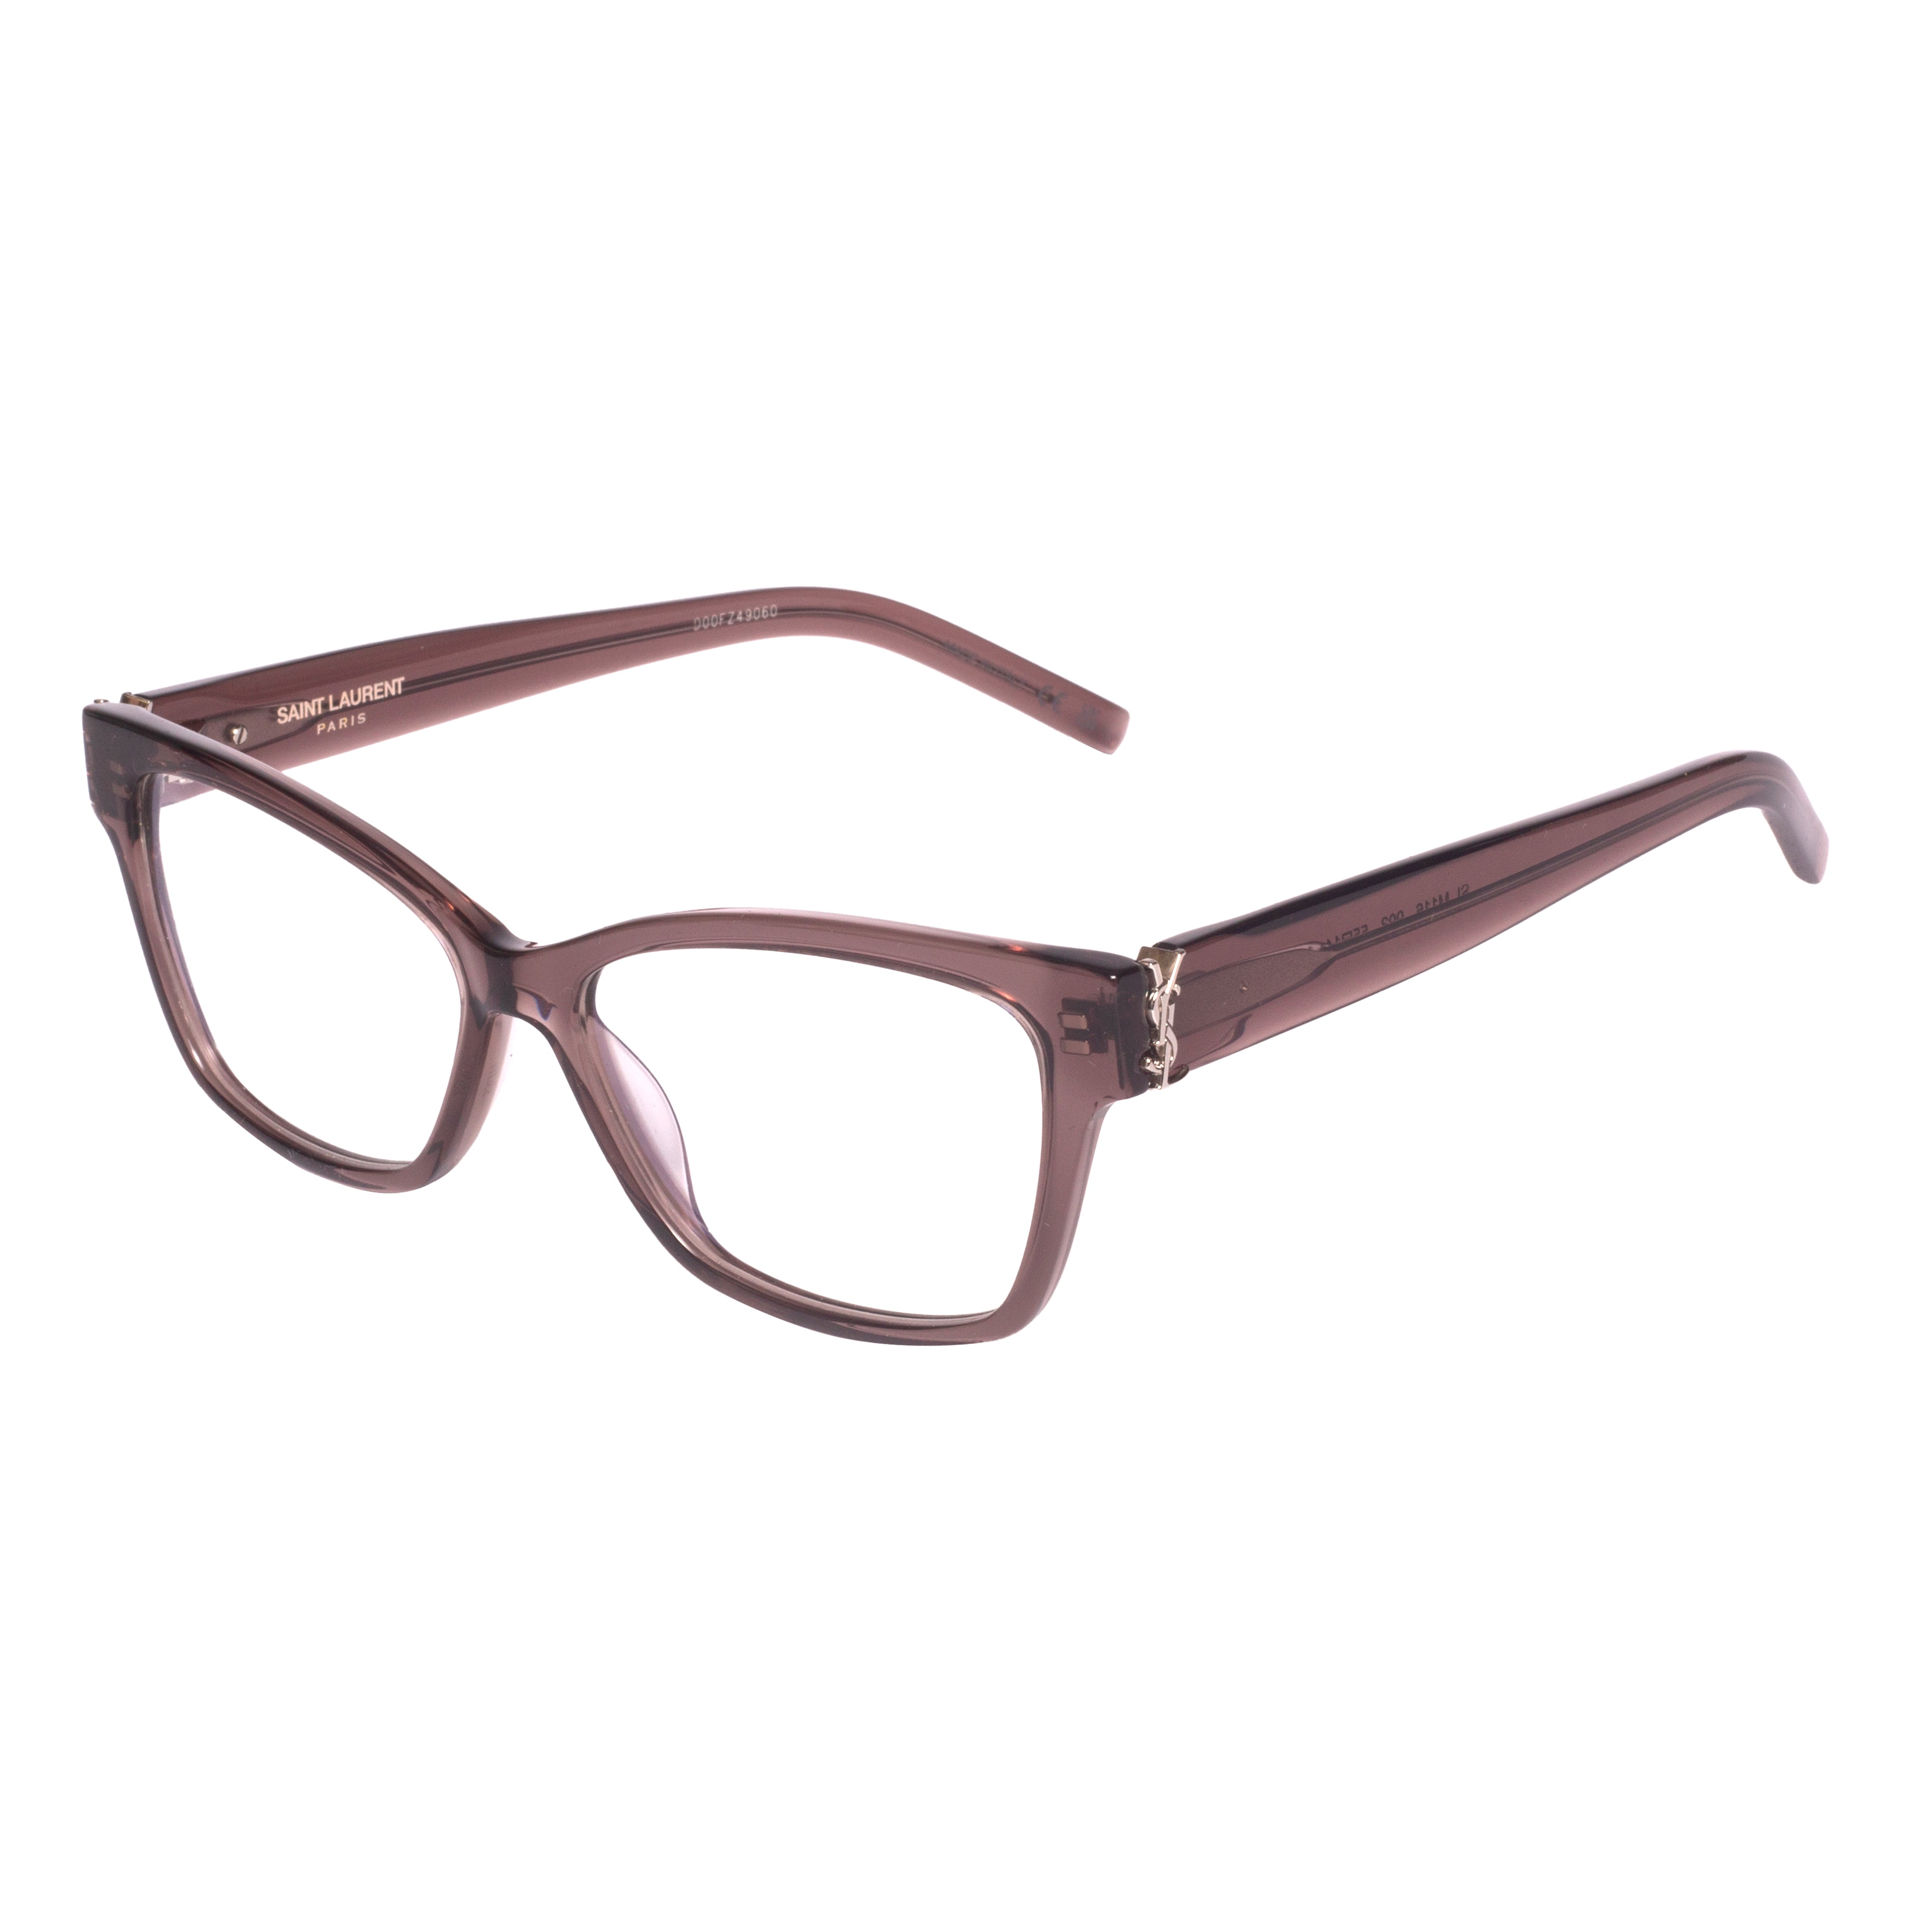 Saint Laurent-SL M116-55-003 Eyeglasses - Premium Eyeglasses from Saint Laurent - Just Rs. 26400! Shop now at Laxmi Opticians